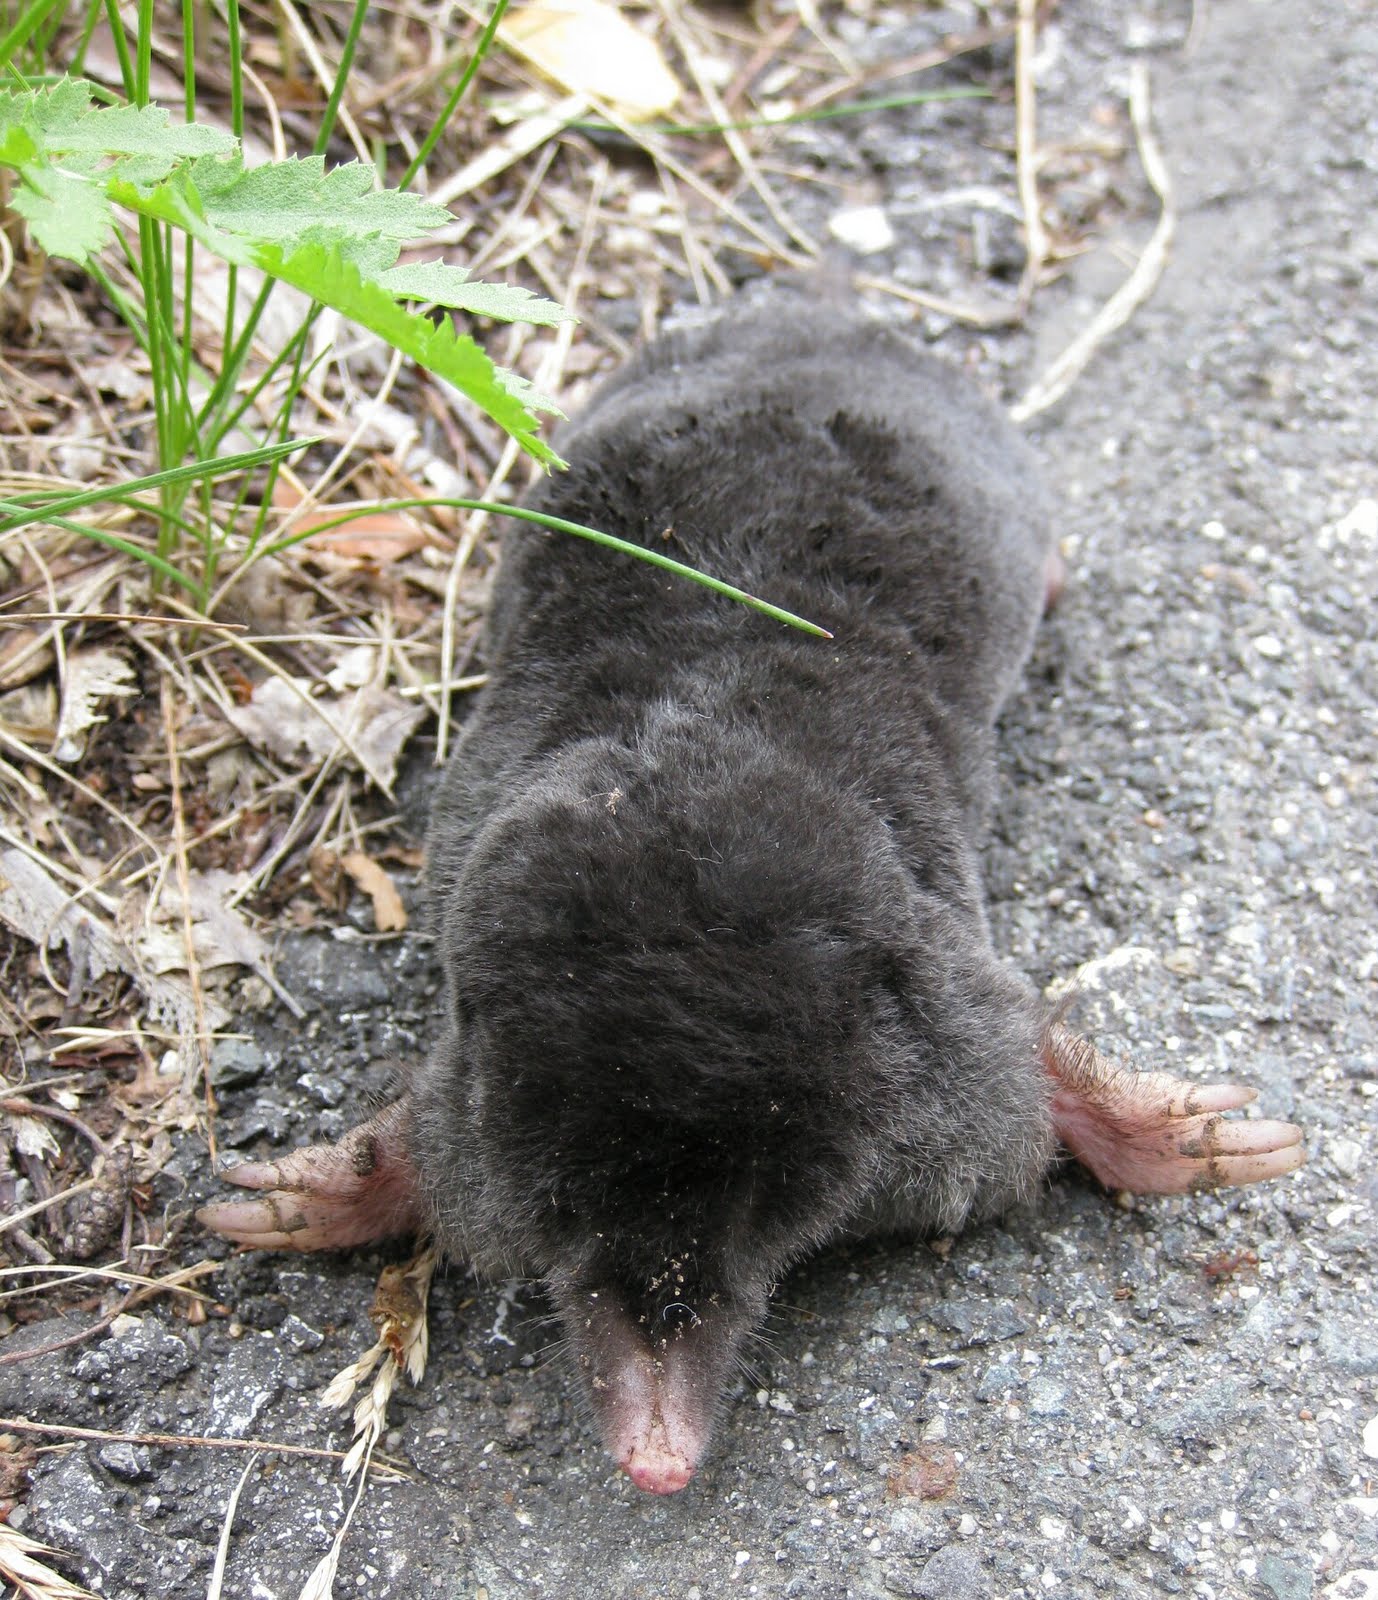 mole in hole